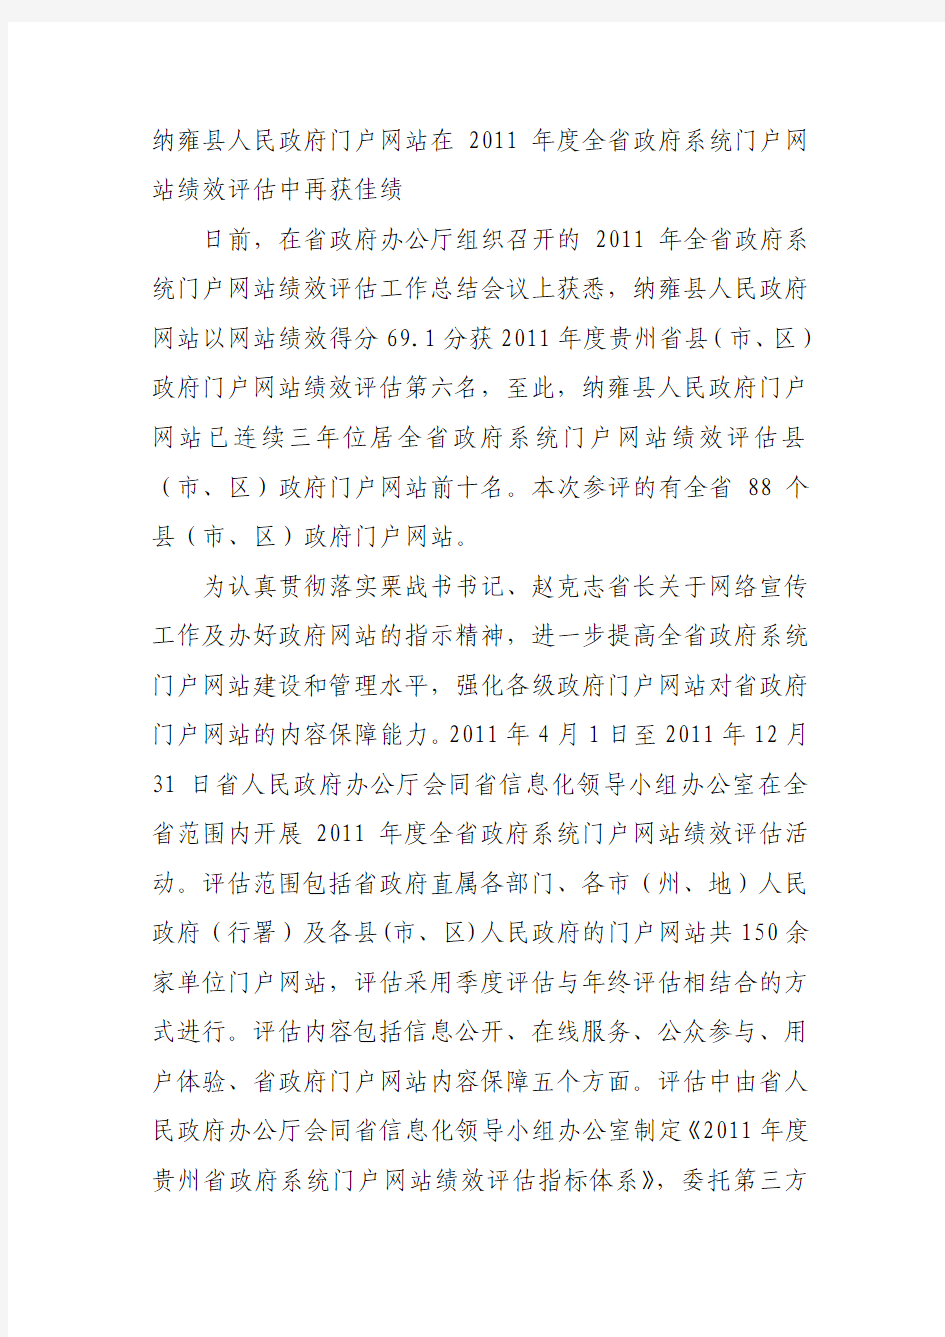 纳雍县人民政府门户网站在2011年度全省政府系统门户网站绩效评估中再获佳绩